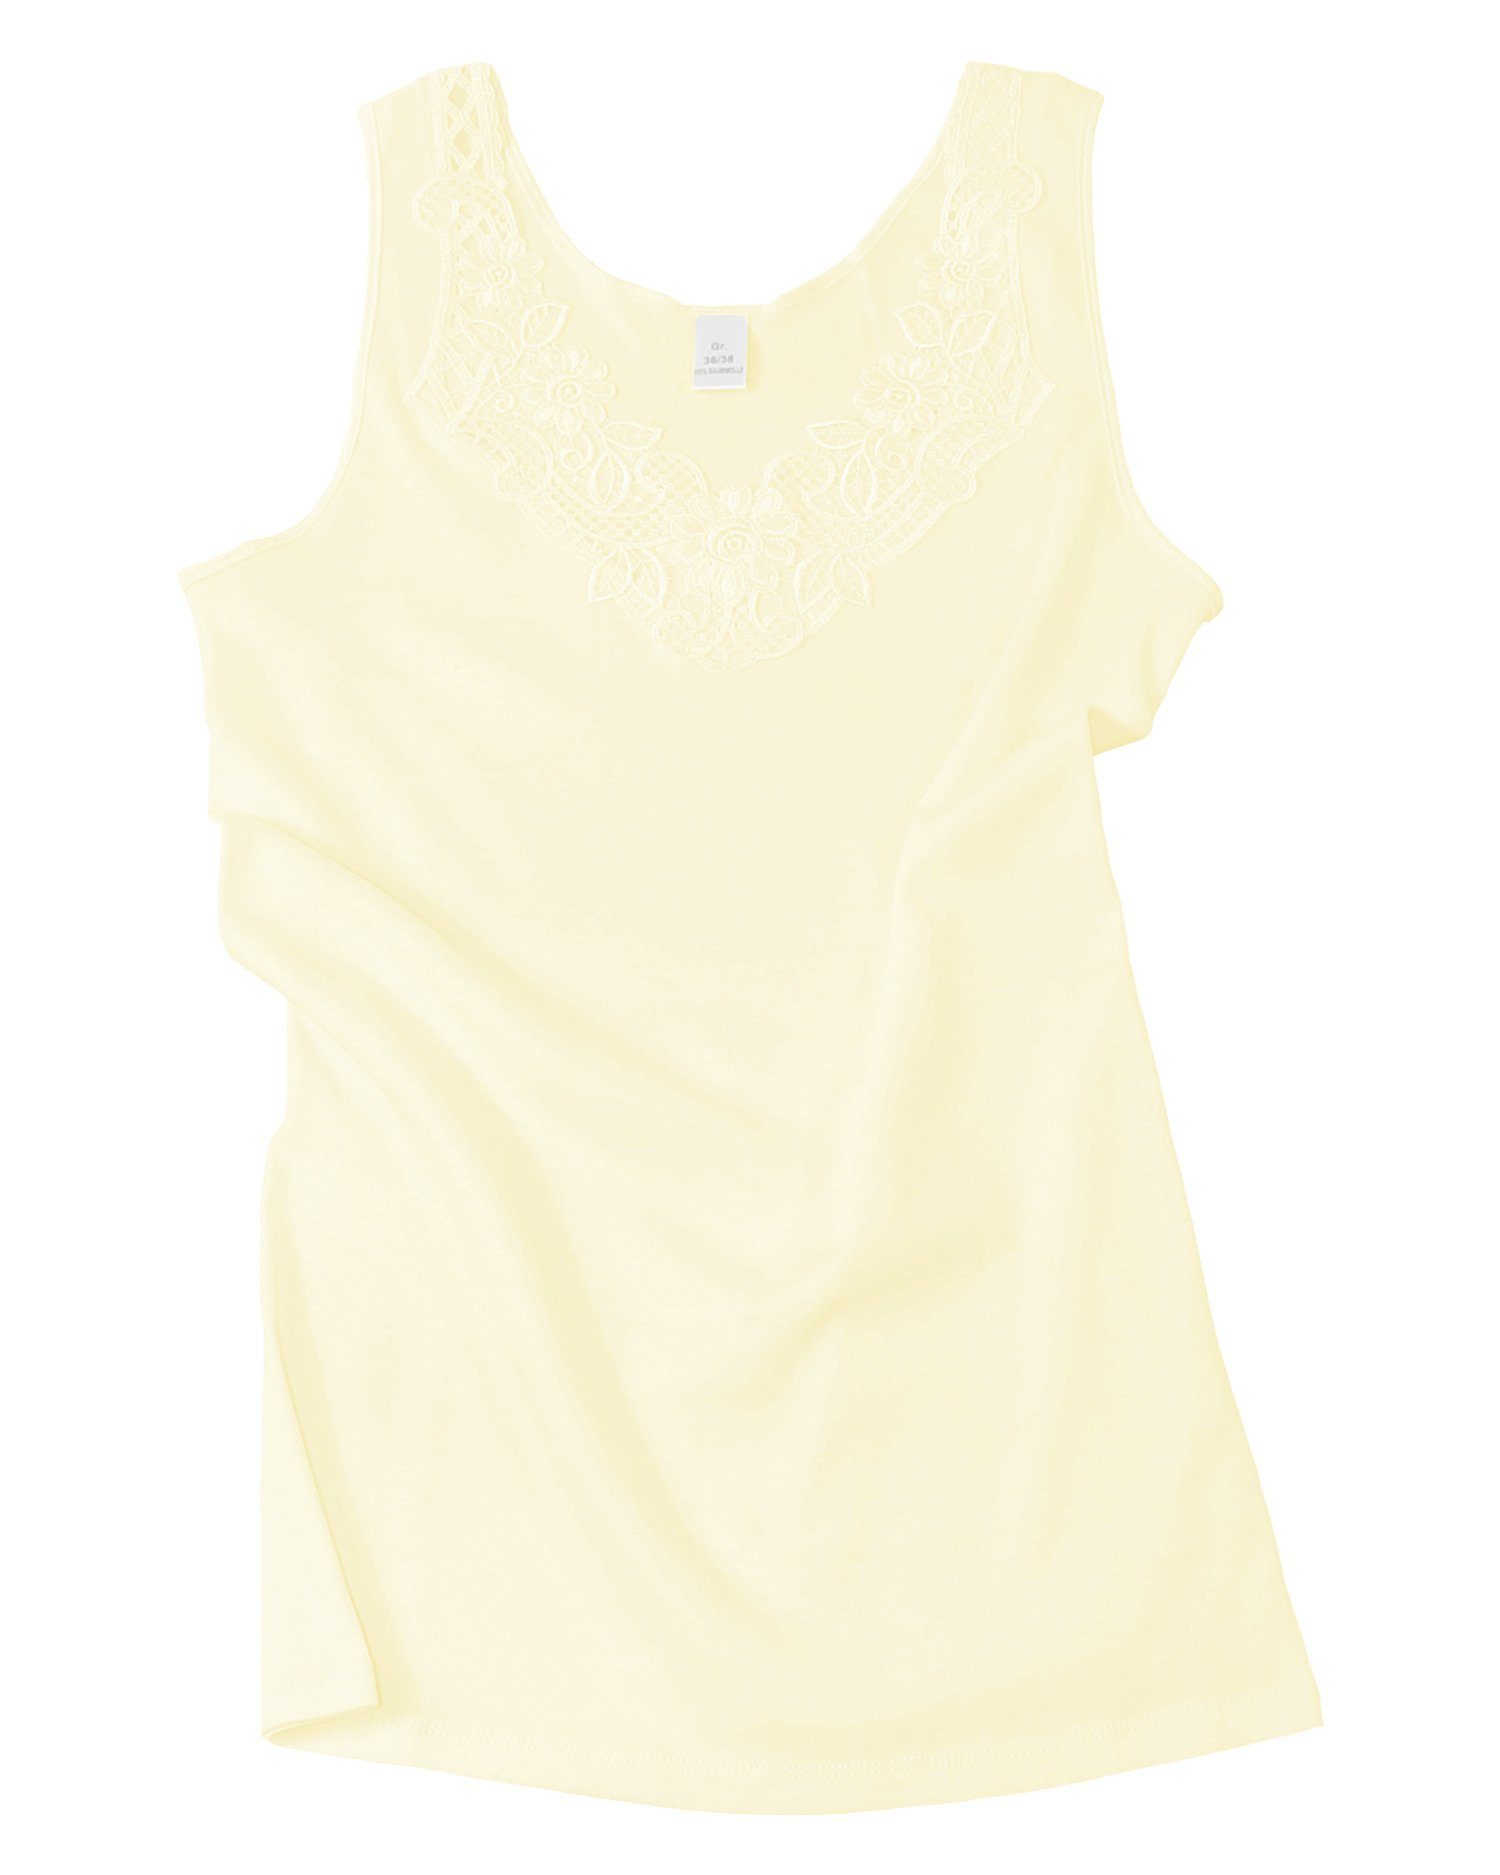 Unterhemd mit in Prime® Baumwollqualität sekt-gelb angenehmer Spitze Cotton